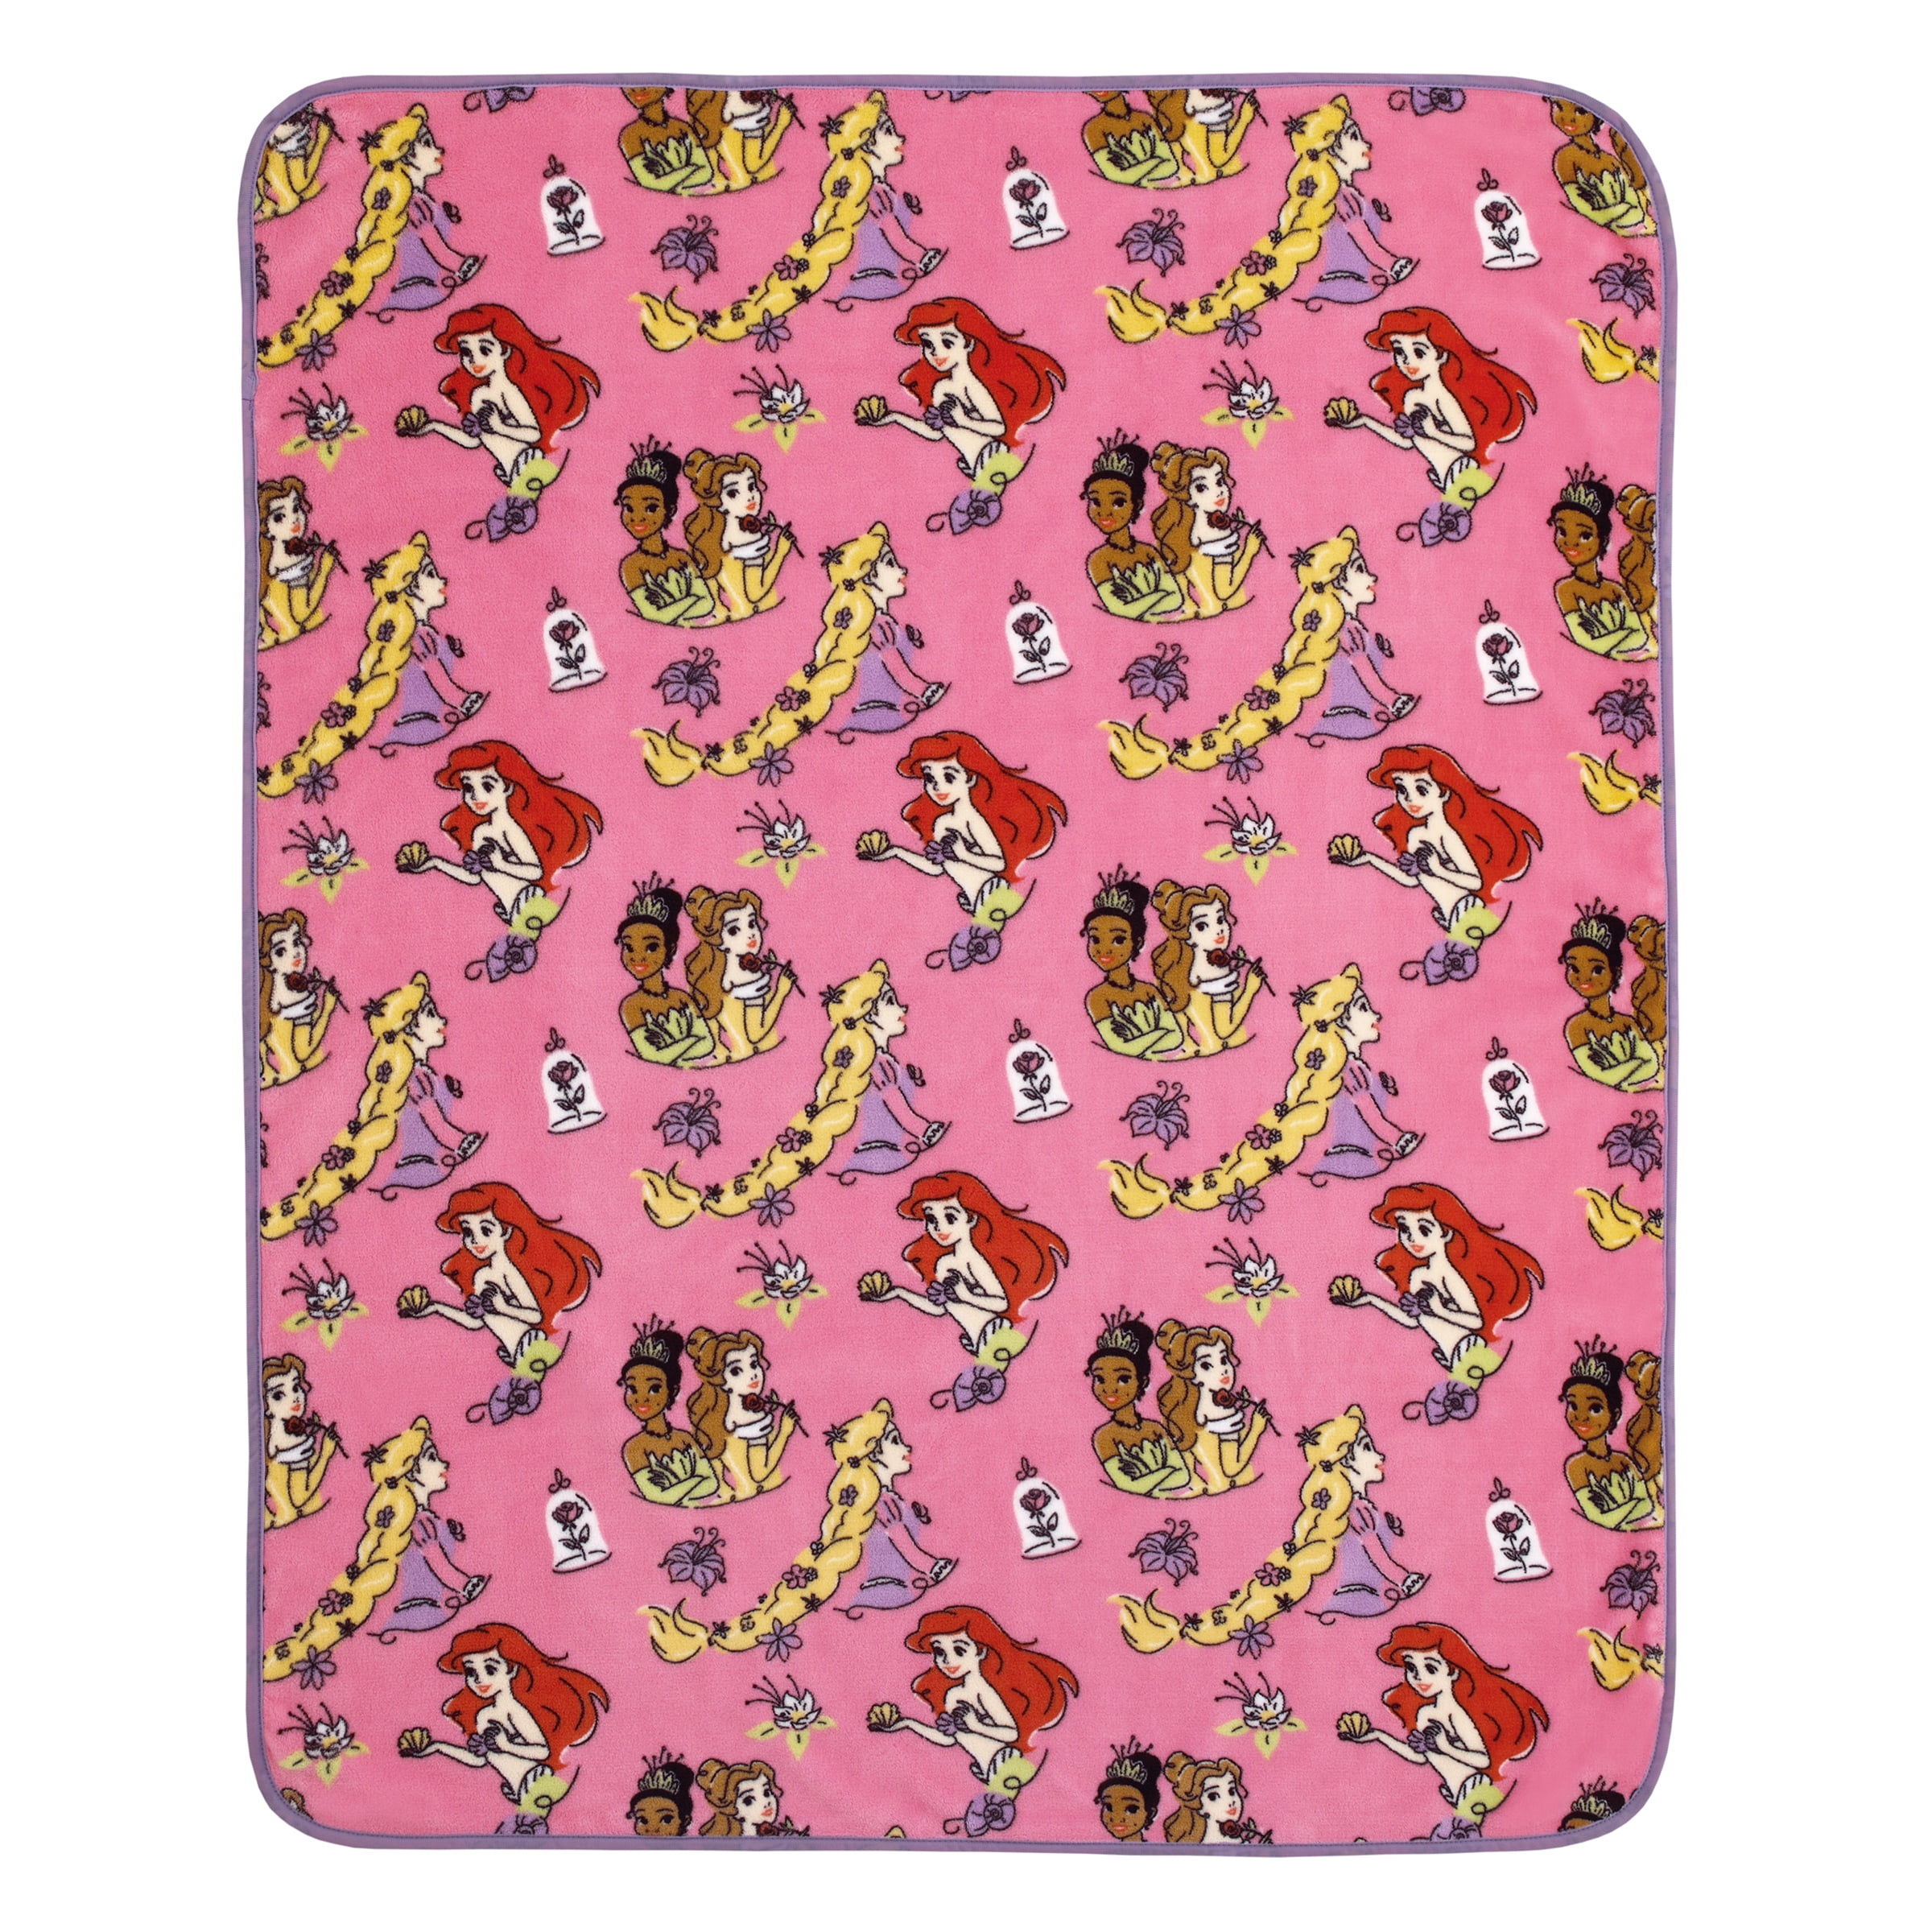 Disney Princess Plush Toddler Blanket, 40"x50", Pink, Machine Washable